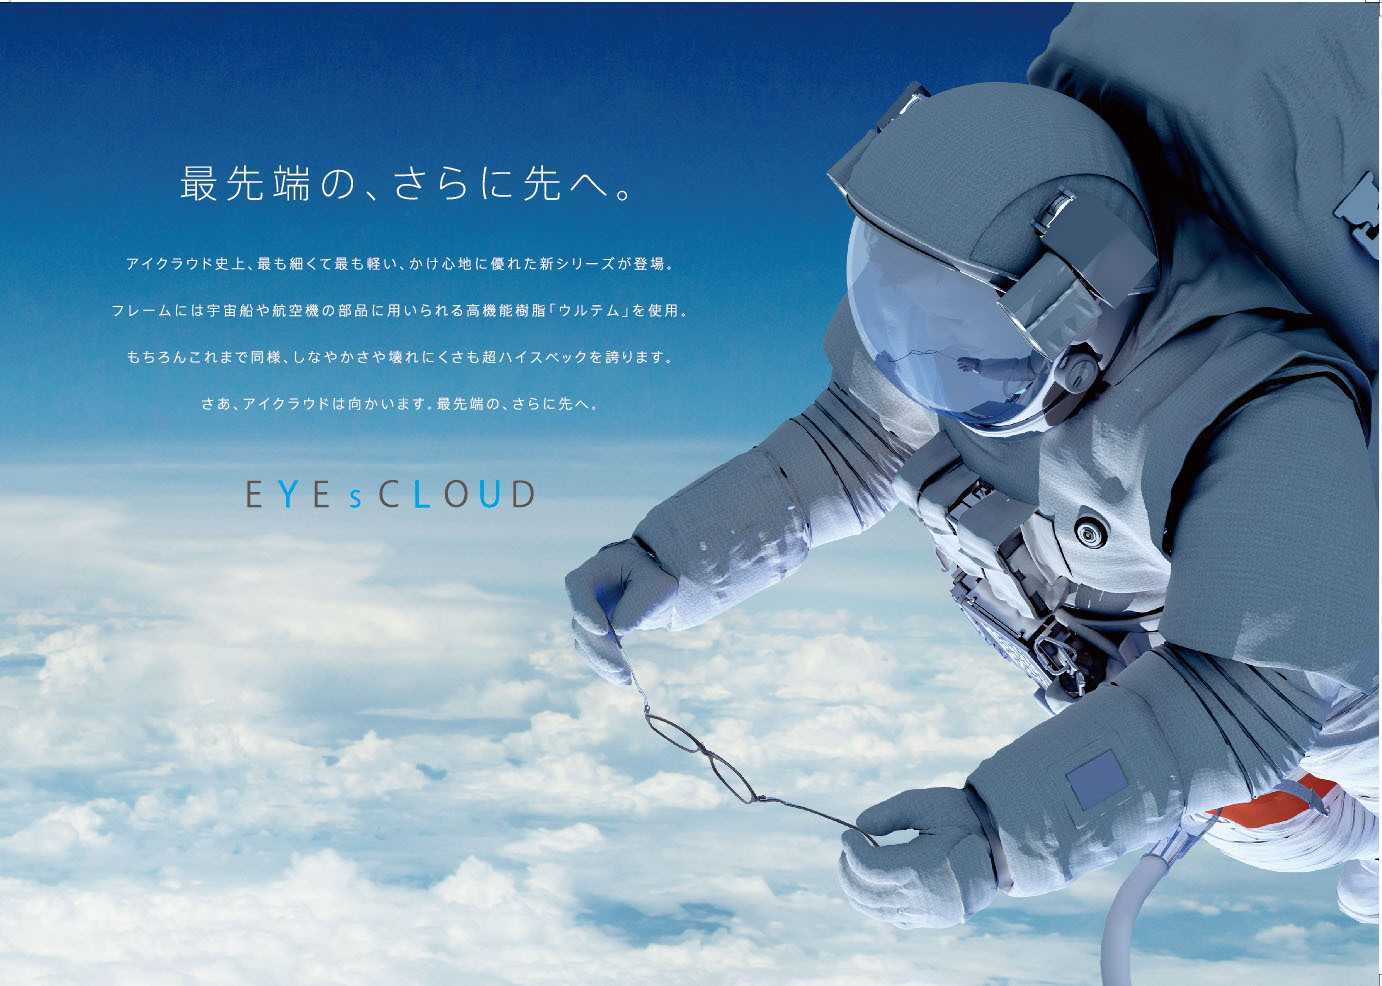 eyes-cloud-eyewear-posters-sky